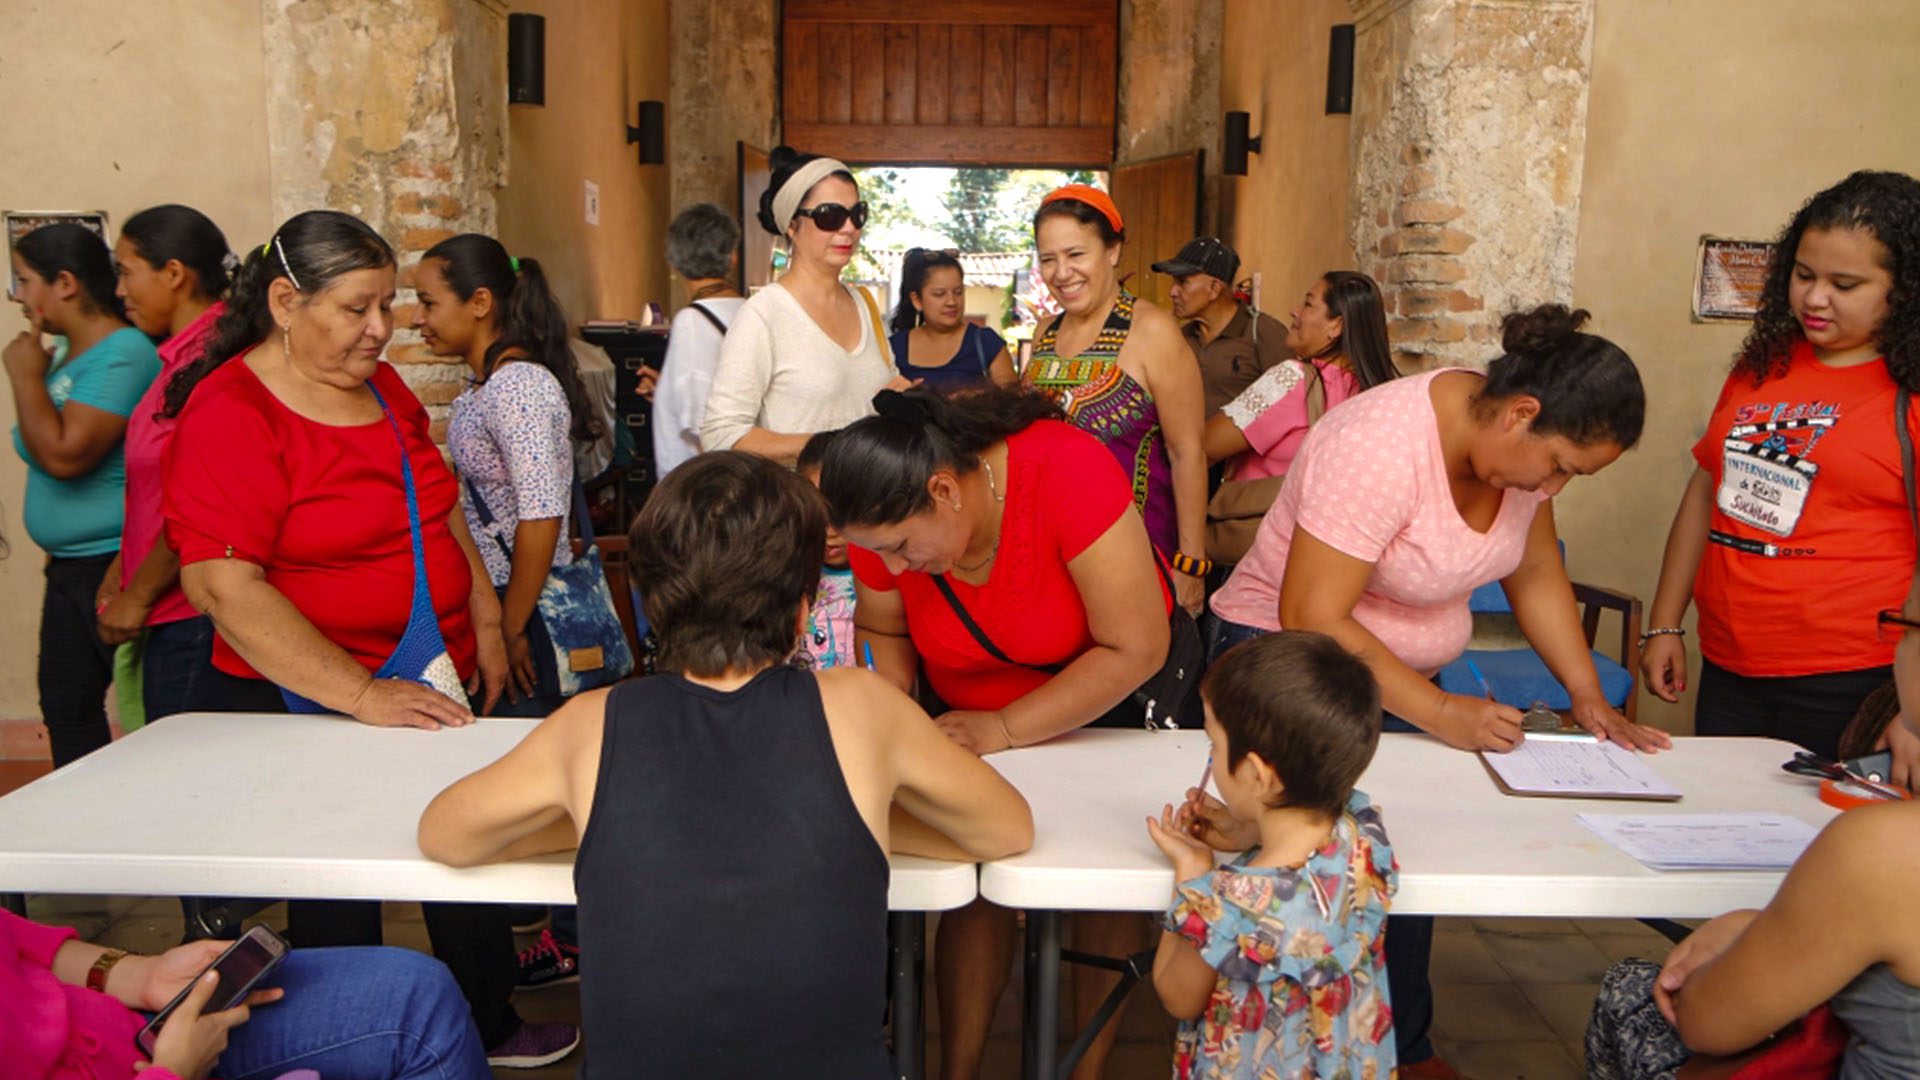 Galería 9 About - bienvenida - Casa de Las Mujeres en Suchitoto - El Salvador